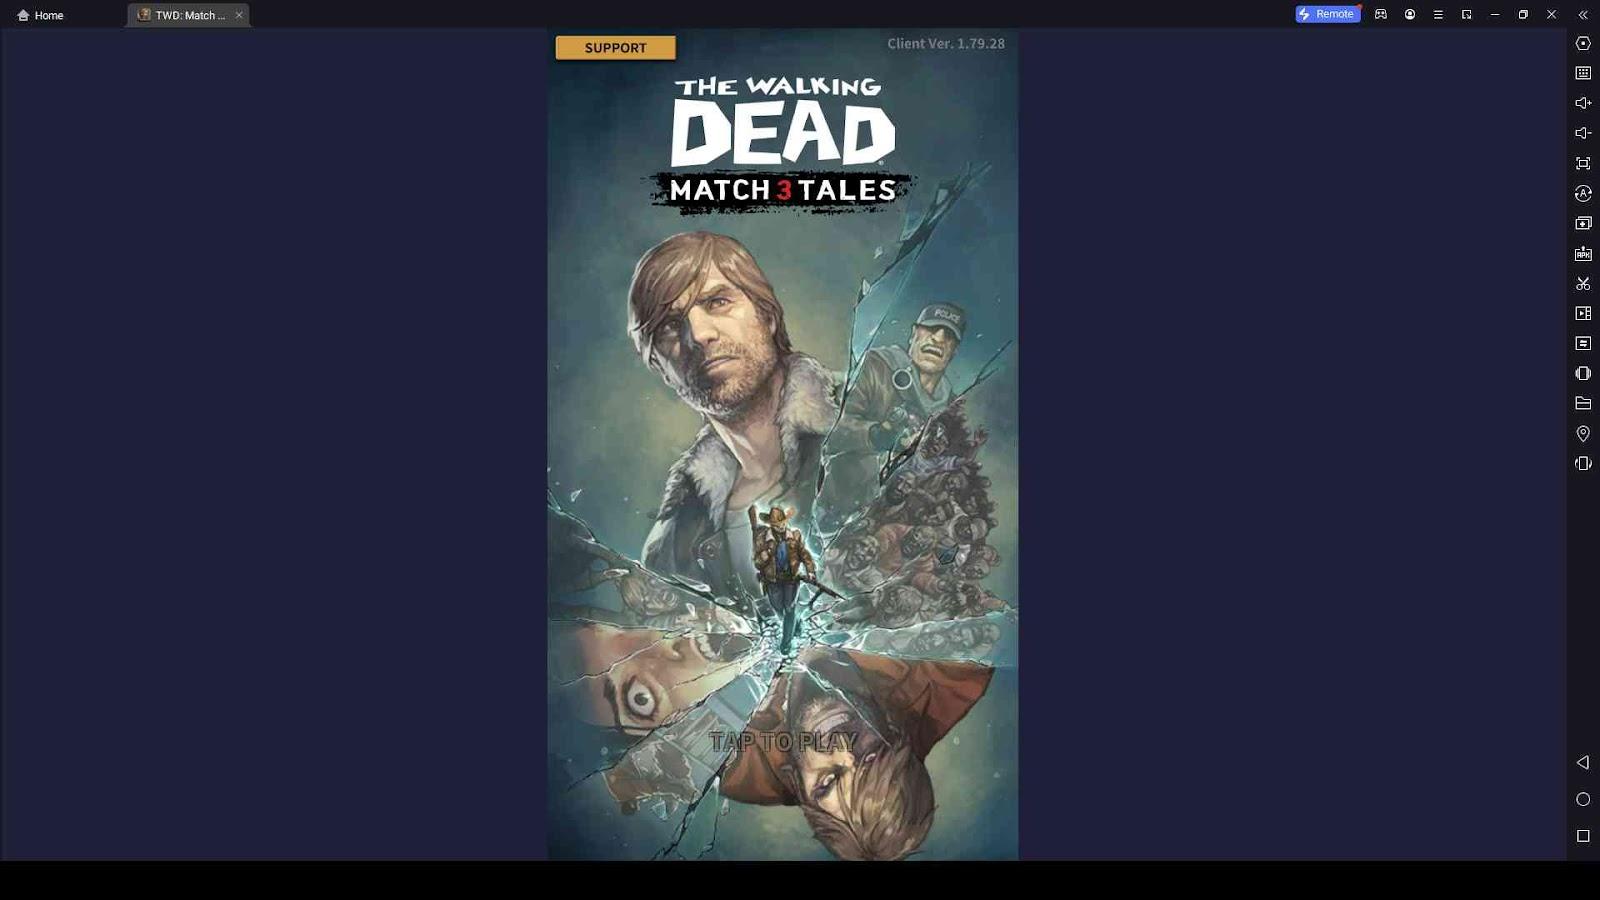 The Walking Dead Match 3 Tales Beginner Guide